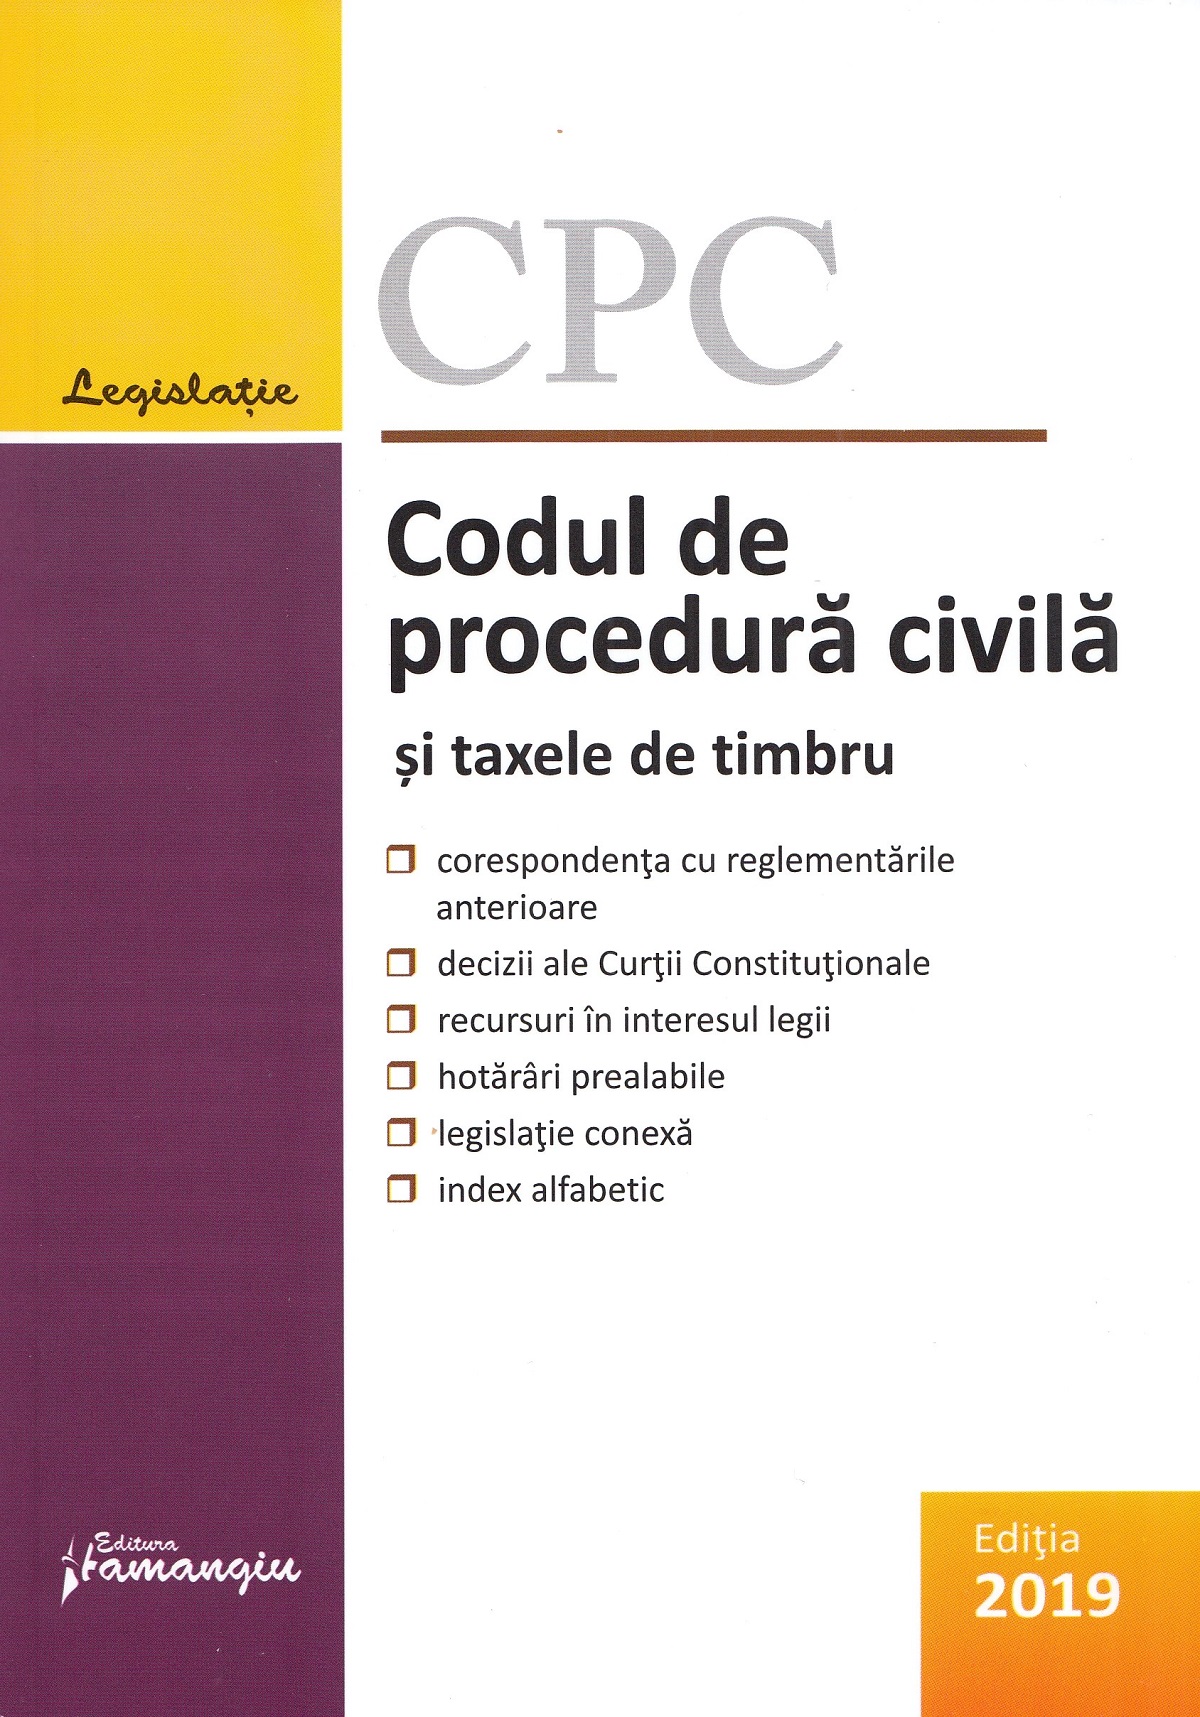 Codul de procedura civila si taxele de timbru. Act. la 10 octombrie 2019